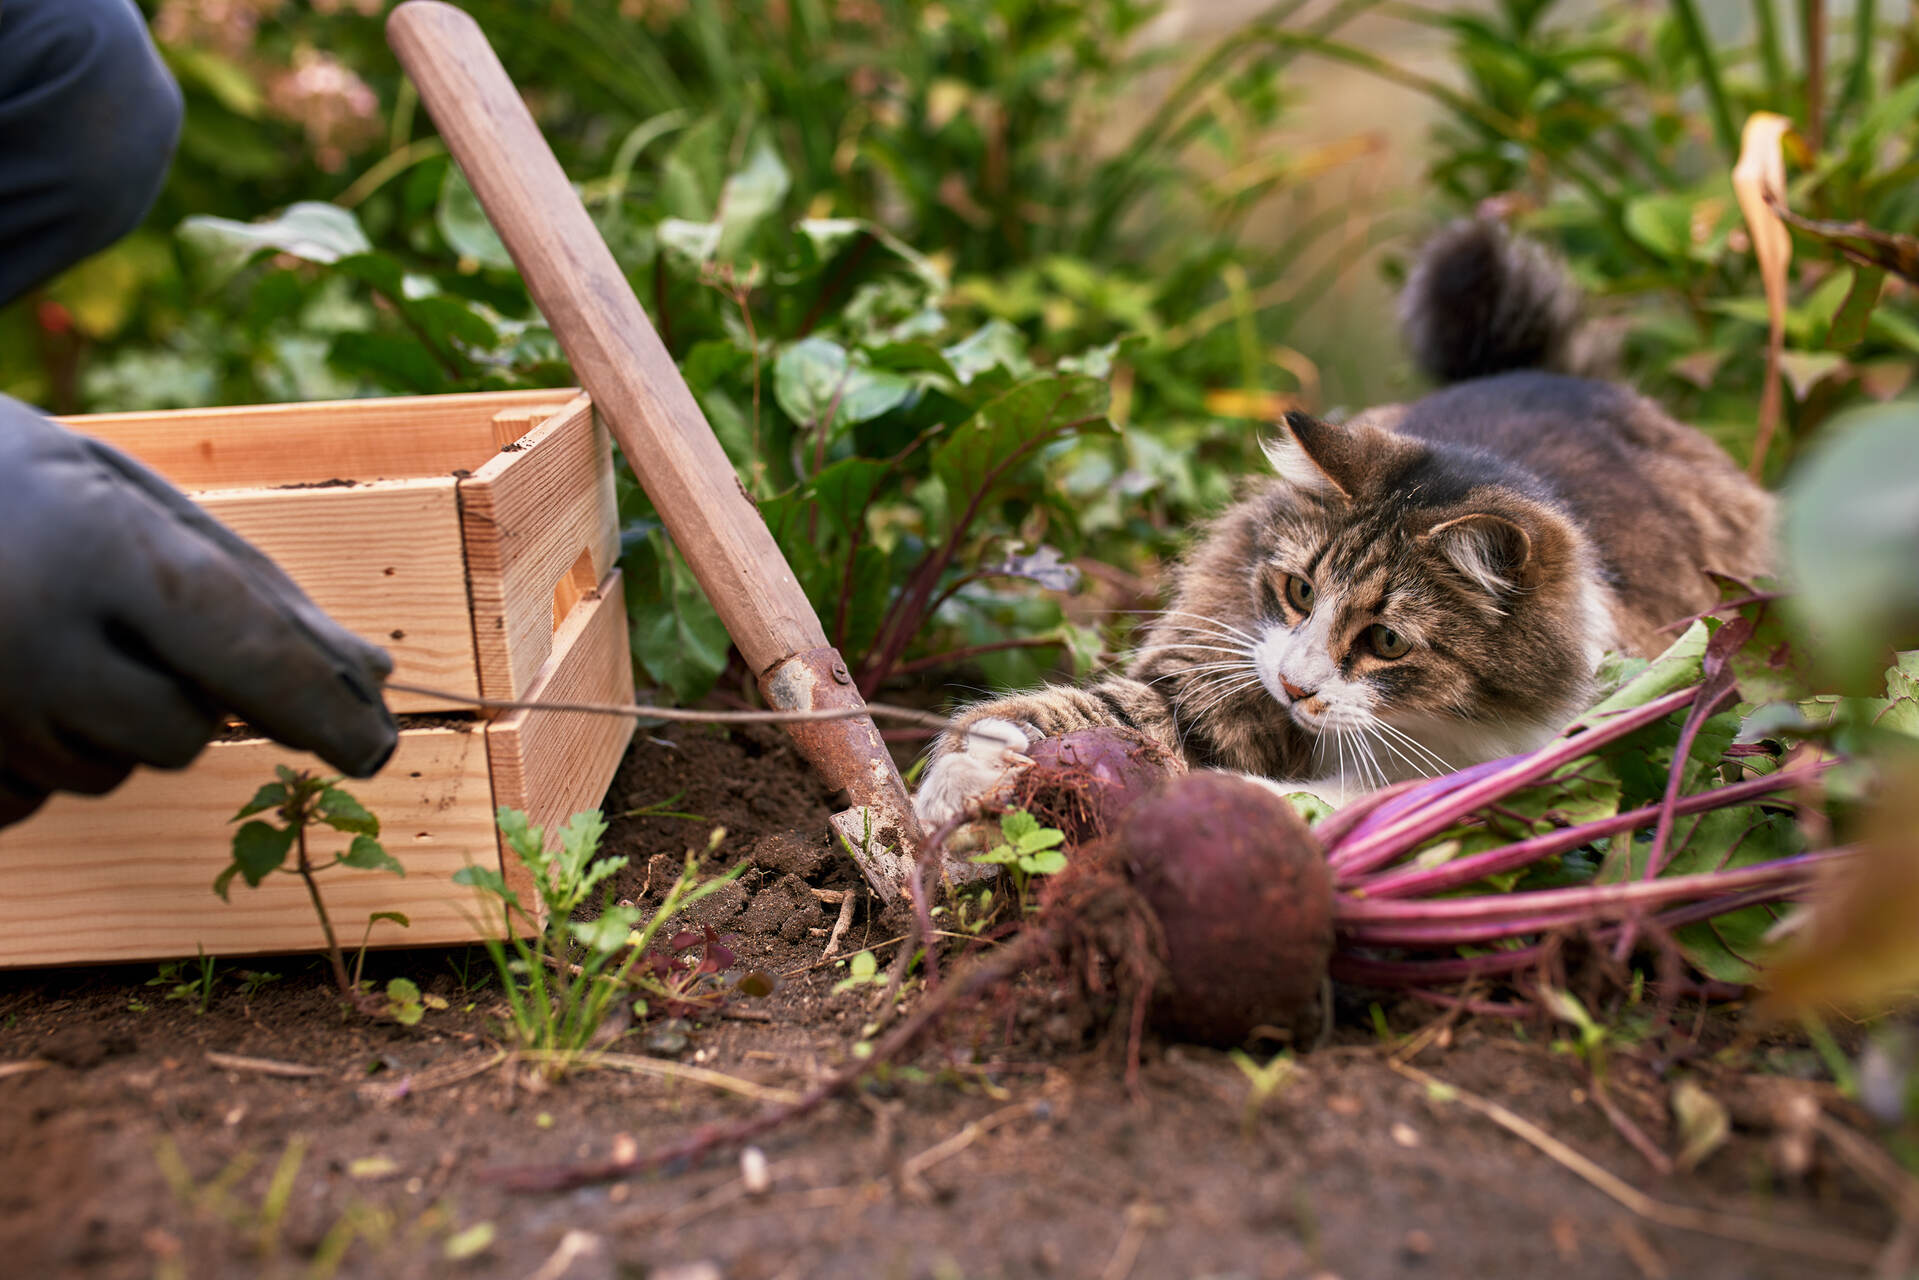 A cat exploring a garden